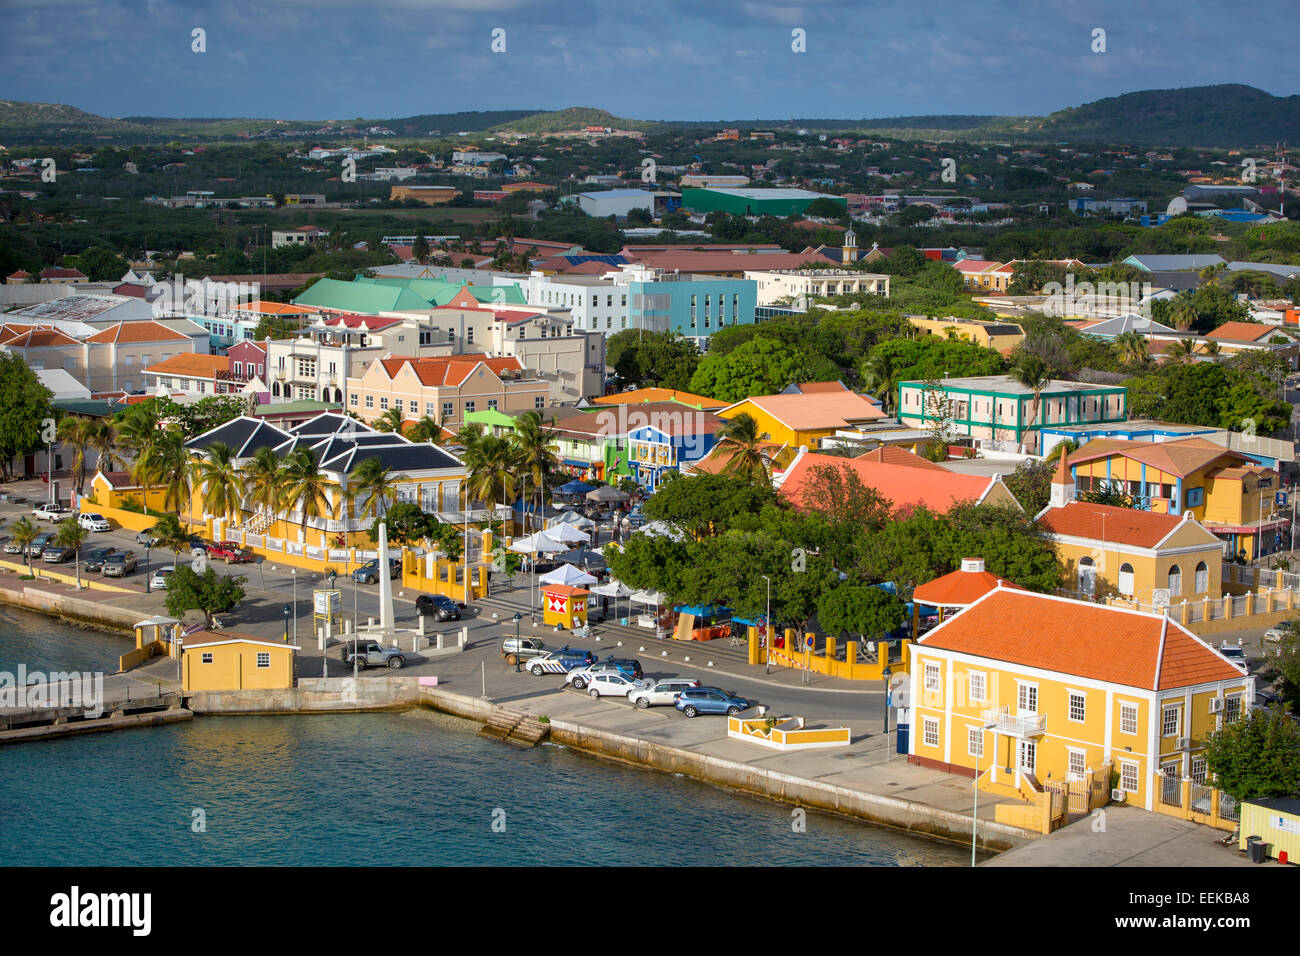 Blick über Hafengebiet und Stadt von Kralendijk, Bonaire, Niederlande Antillen Stockfoto